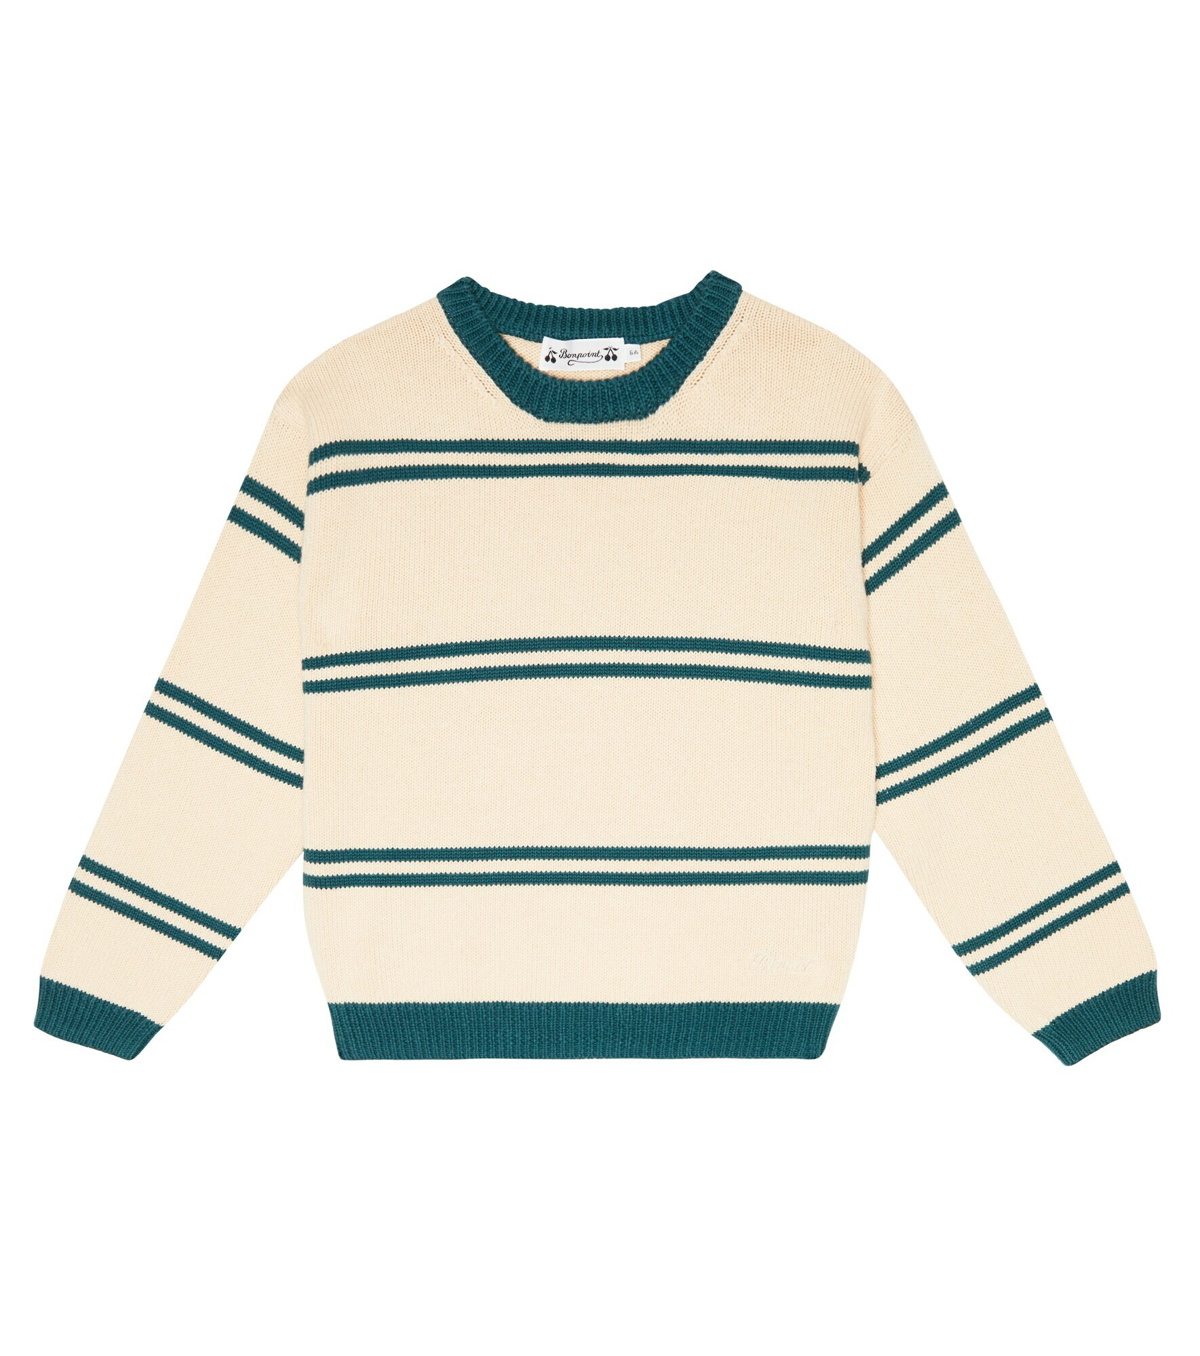 Bonpoint - Anumati cotton sweater Bonpoint